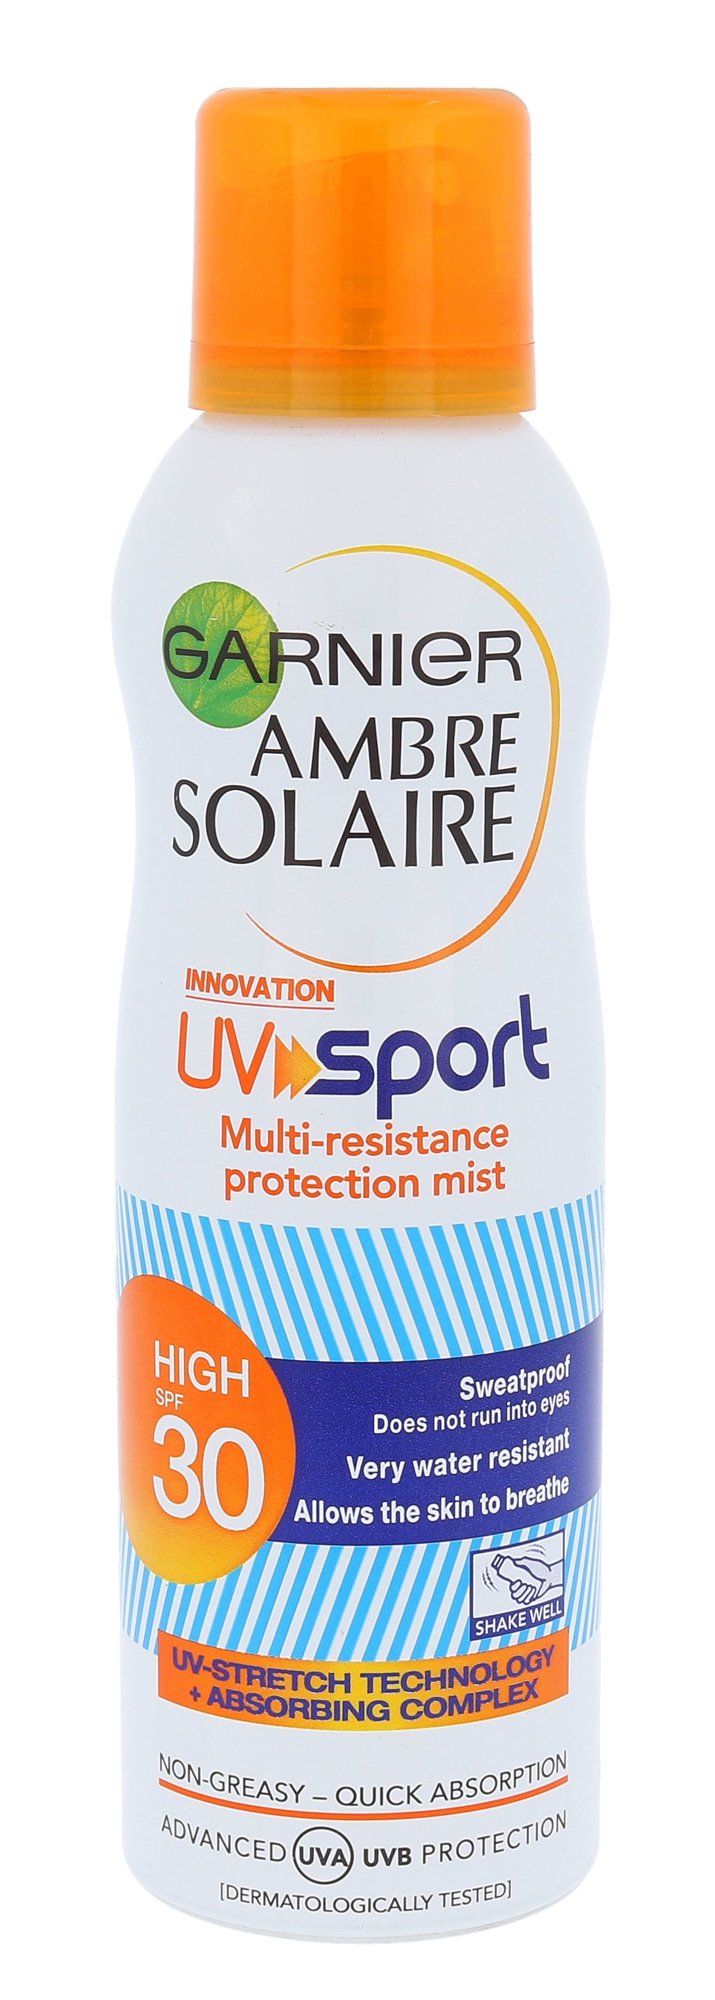 Garnier Ambre Solaire  UV Sport Protection Mist SPF30 įdegio losjonas